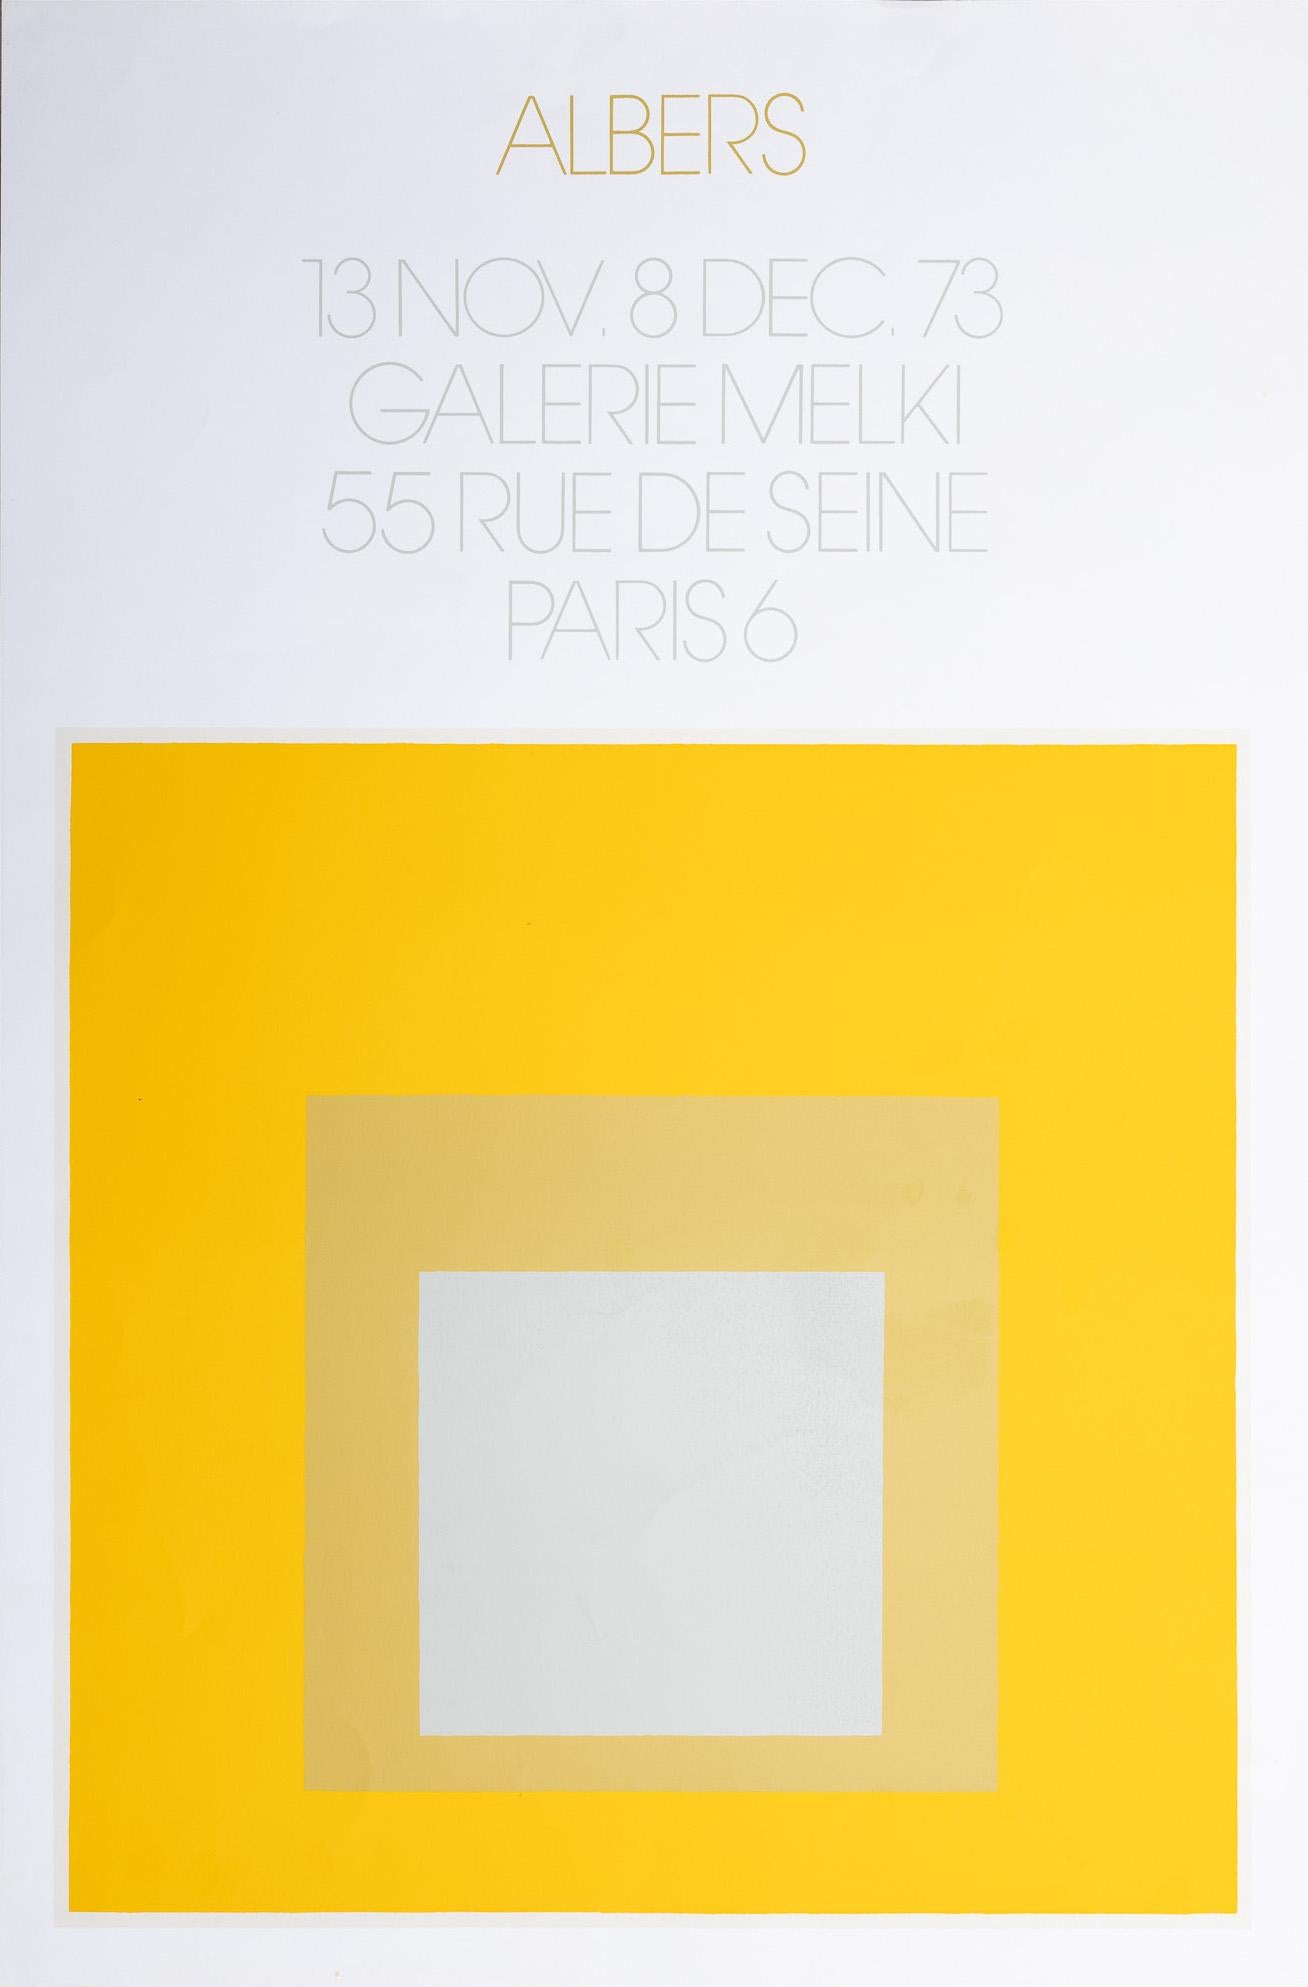 Affiche sérigraphiée de la Galerie Melkie 55 rue de Seine, Paris, 6 pièces - Print de Josef Albers